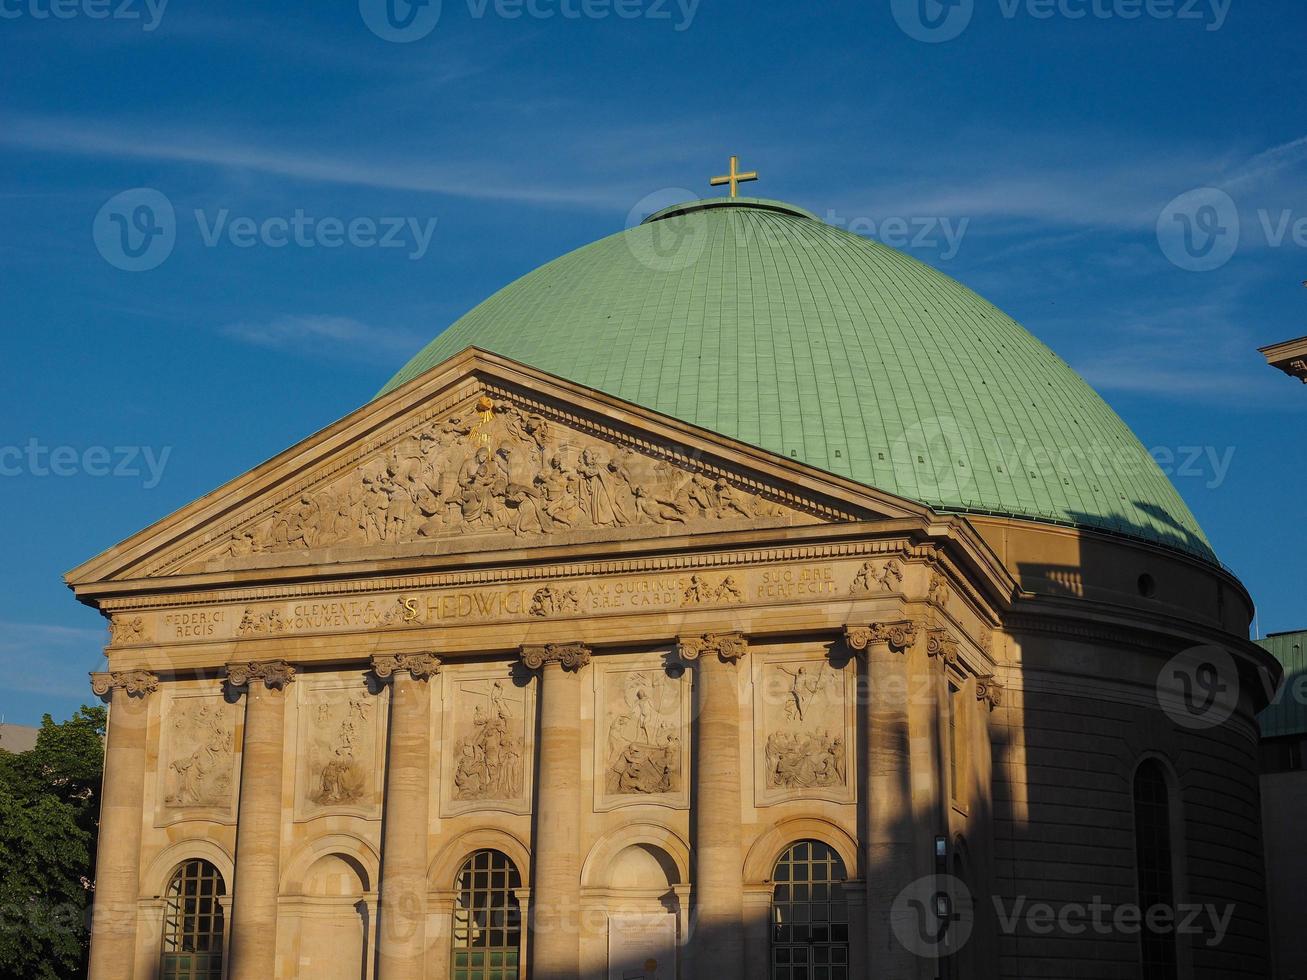 Cattedrale cattolica di St Hedwigs a Berlino foto